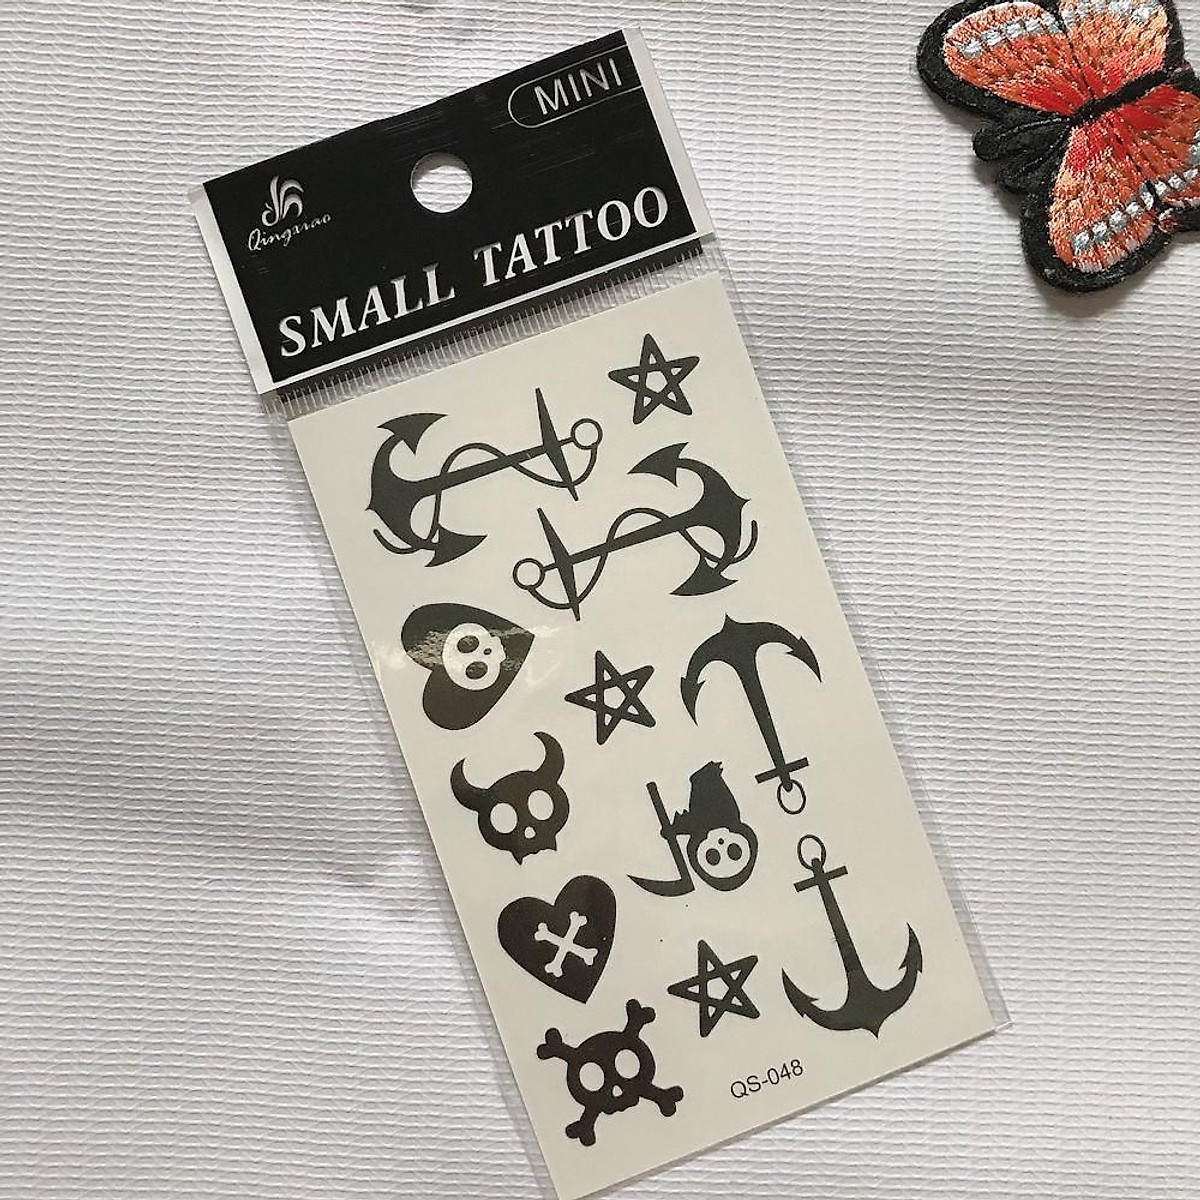 Hình xăm dán mini tatoo | Lazada.vn